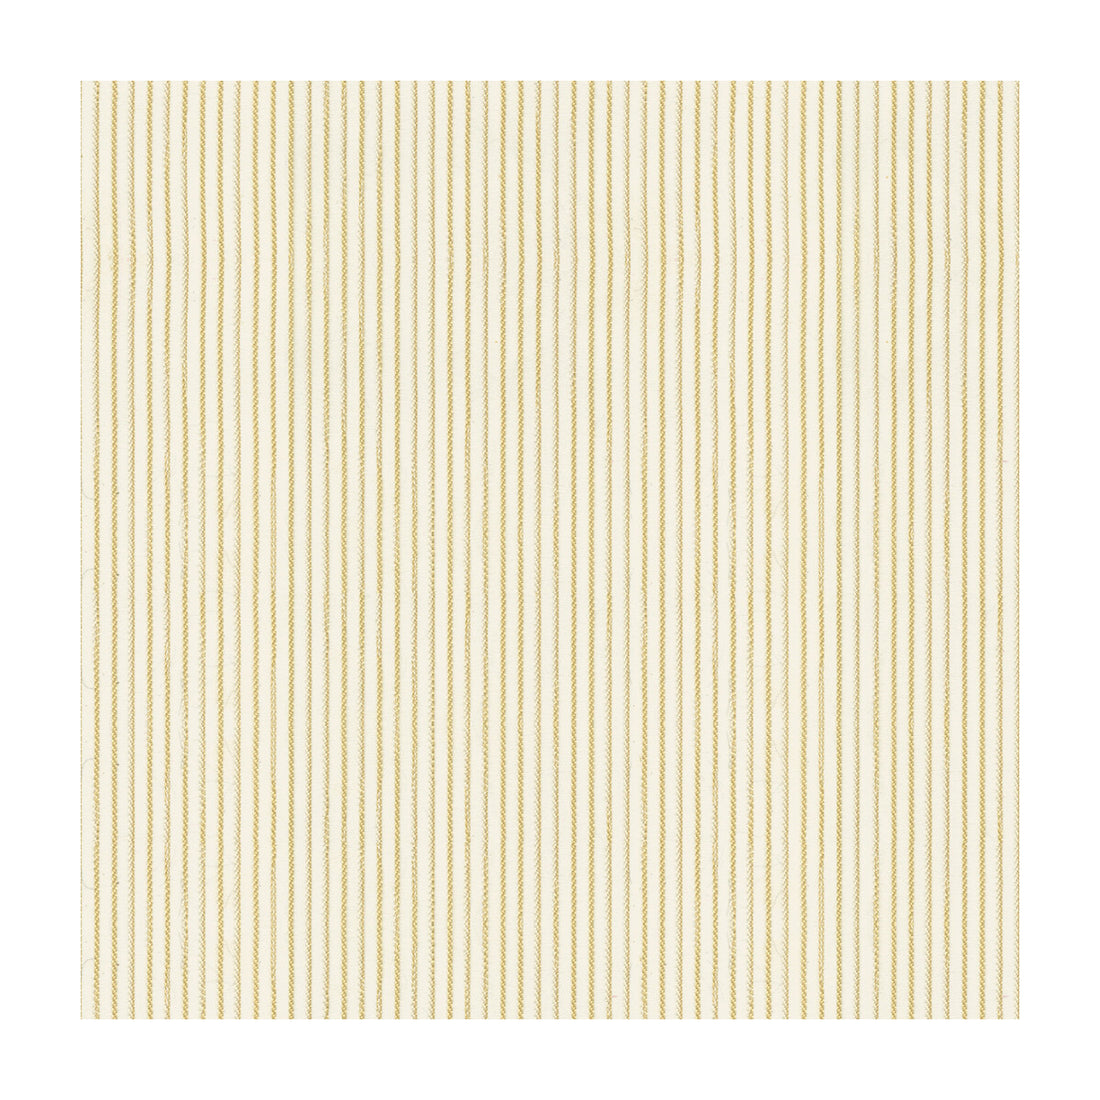 Kravet Basics fabric in 4134-16 color - pattern 4134.16.0 - by Kravet Basics